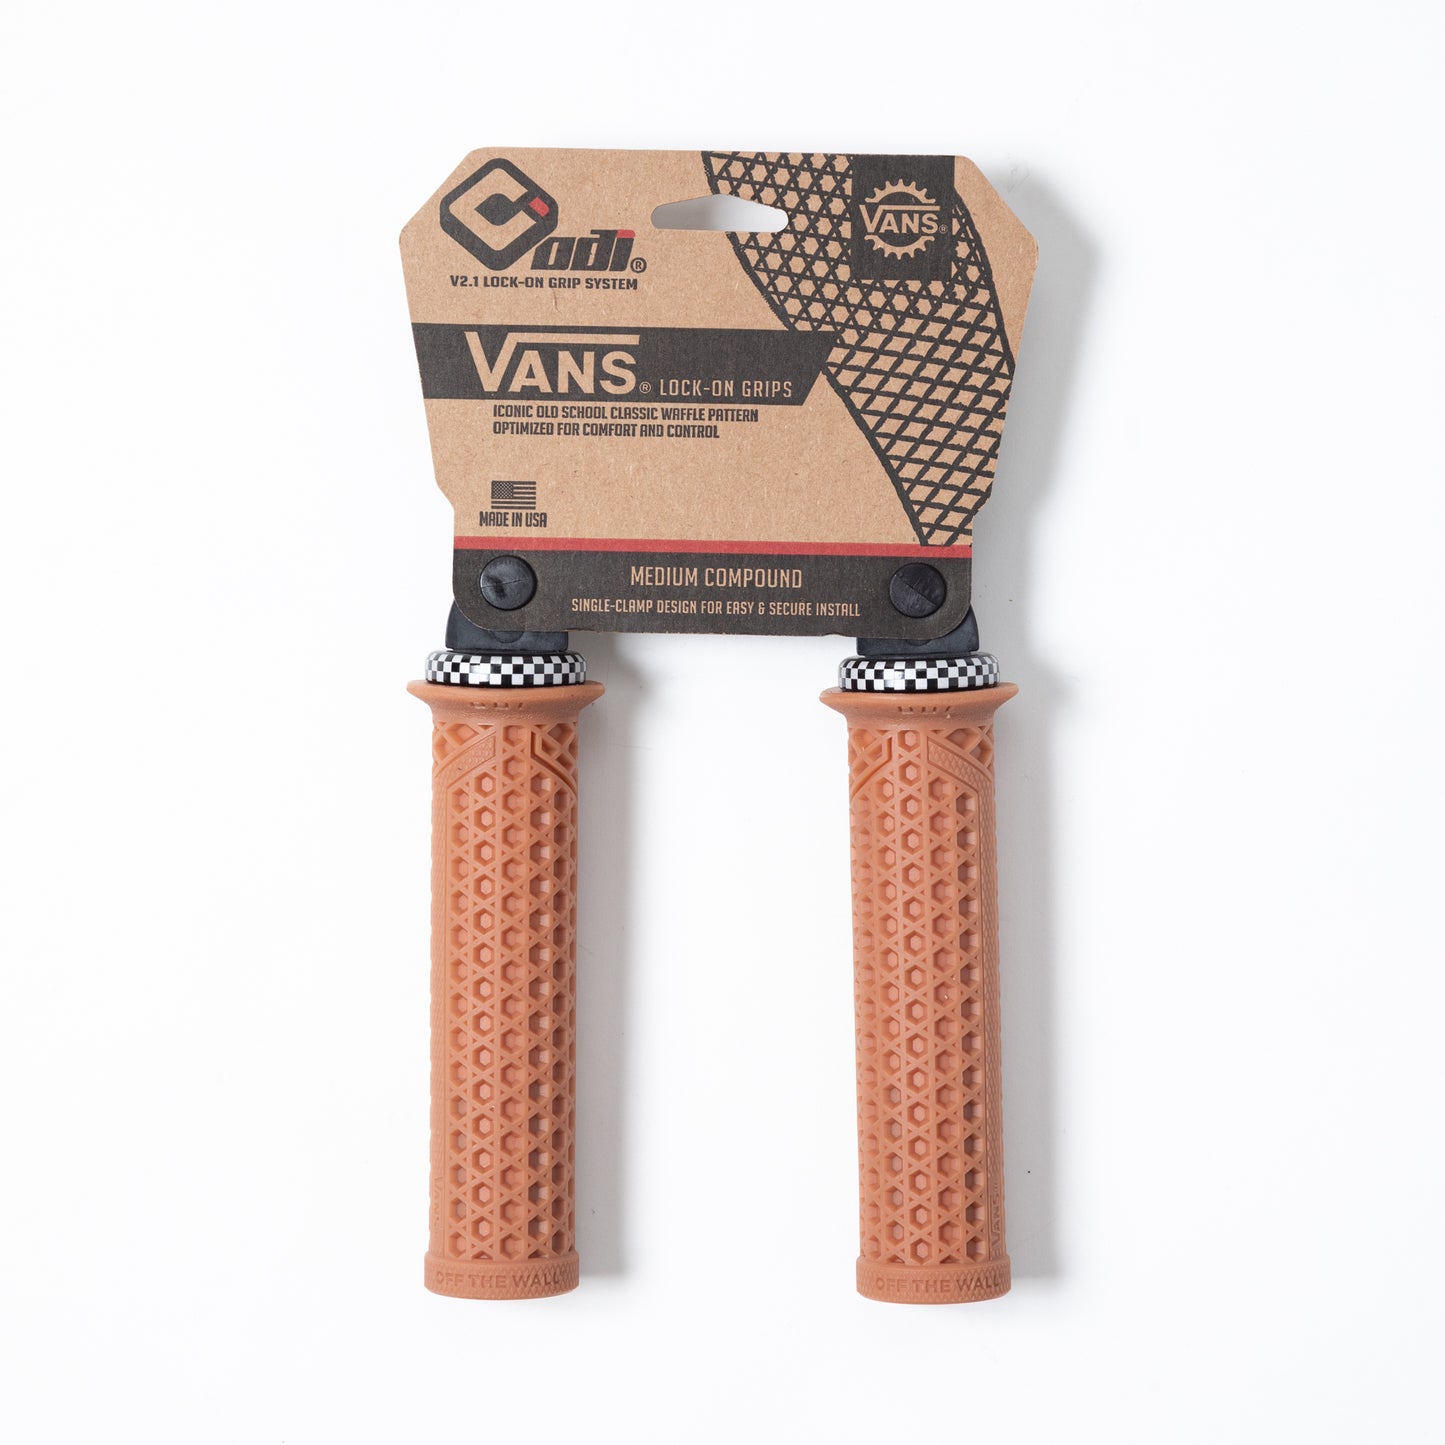 VANS V2.1 LOCK-ON GRIPS (135MM)